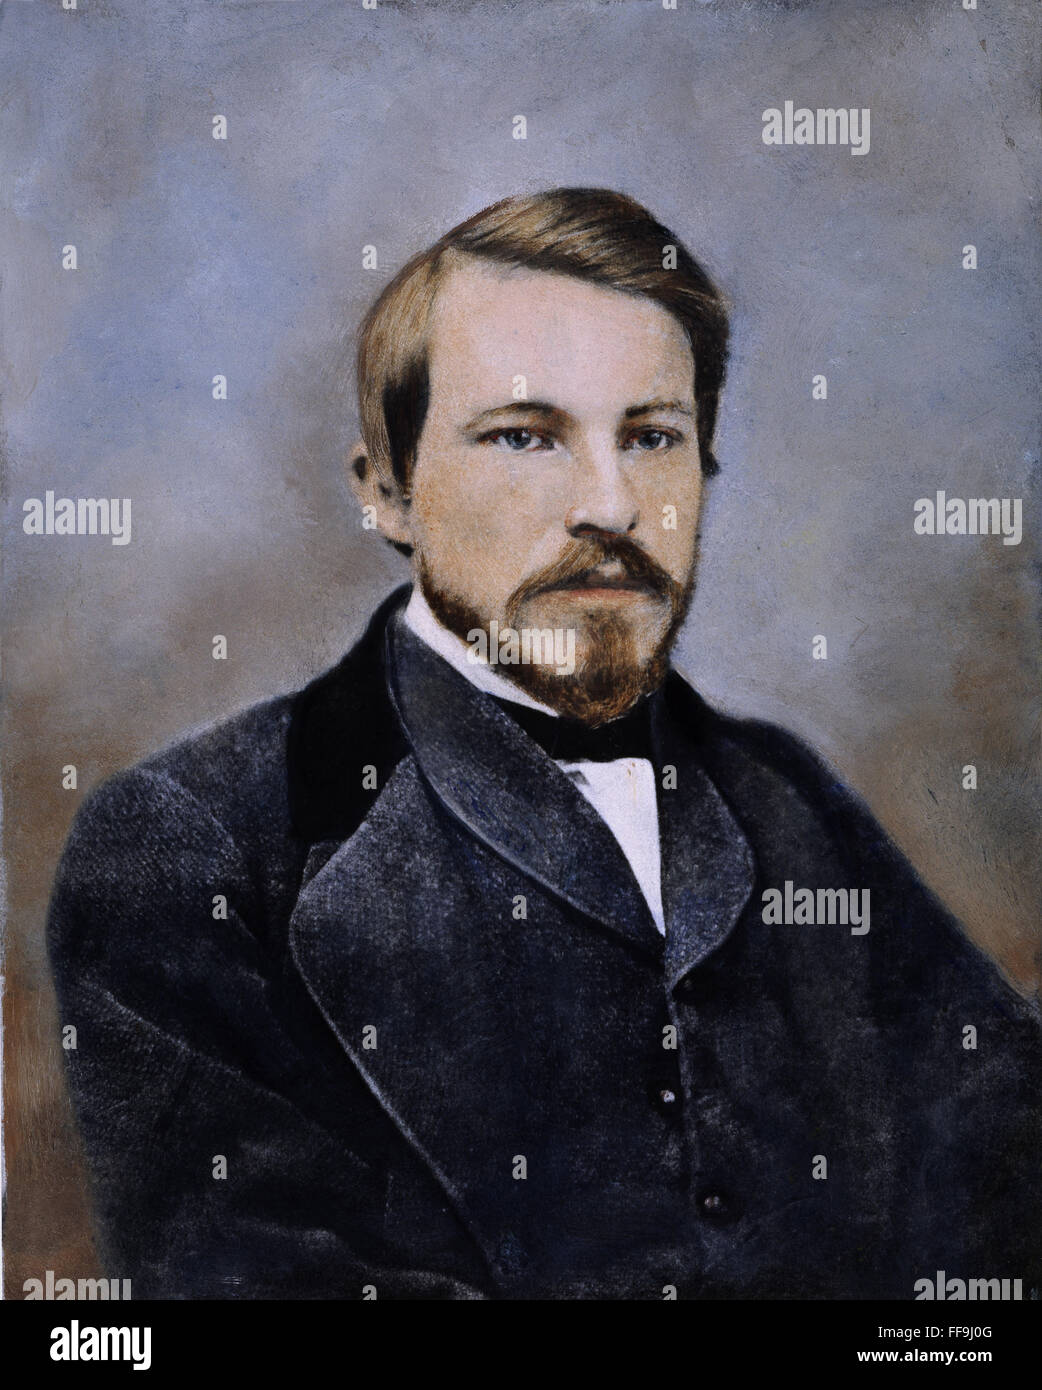 WILLIAM DEAN HOWELLS /n(1837-1920). American hombre de letras. Fotografía, c1860-61. Foto de stock